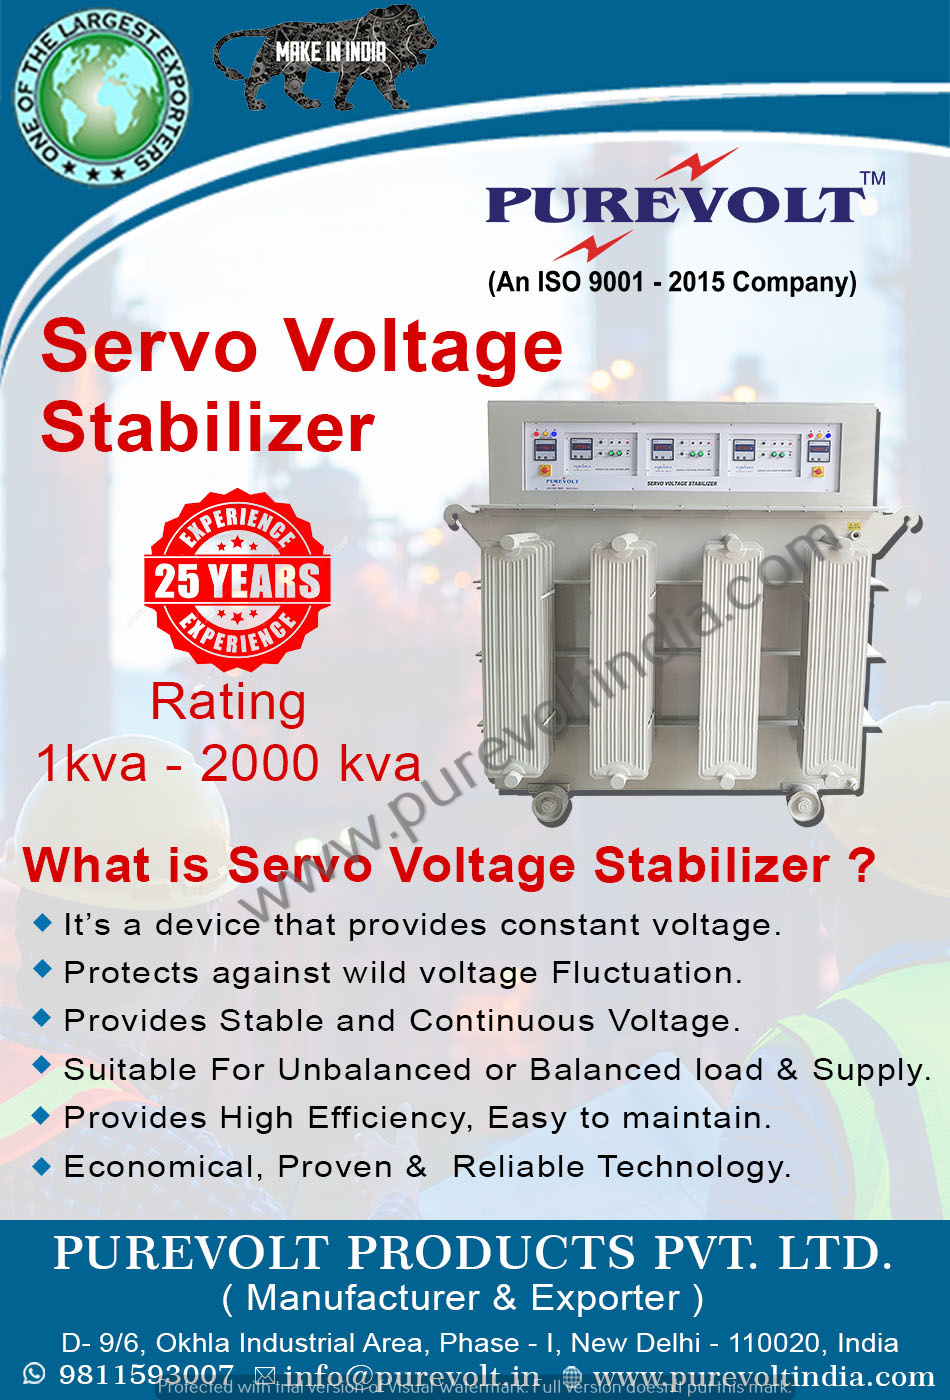 What is Servo Voltage Stabilizer